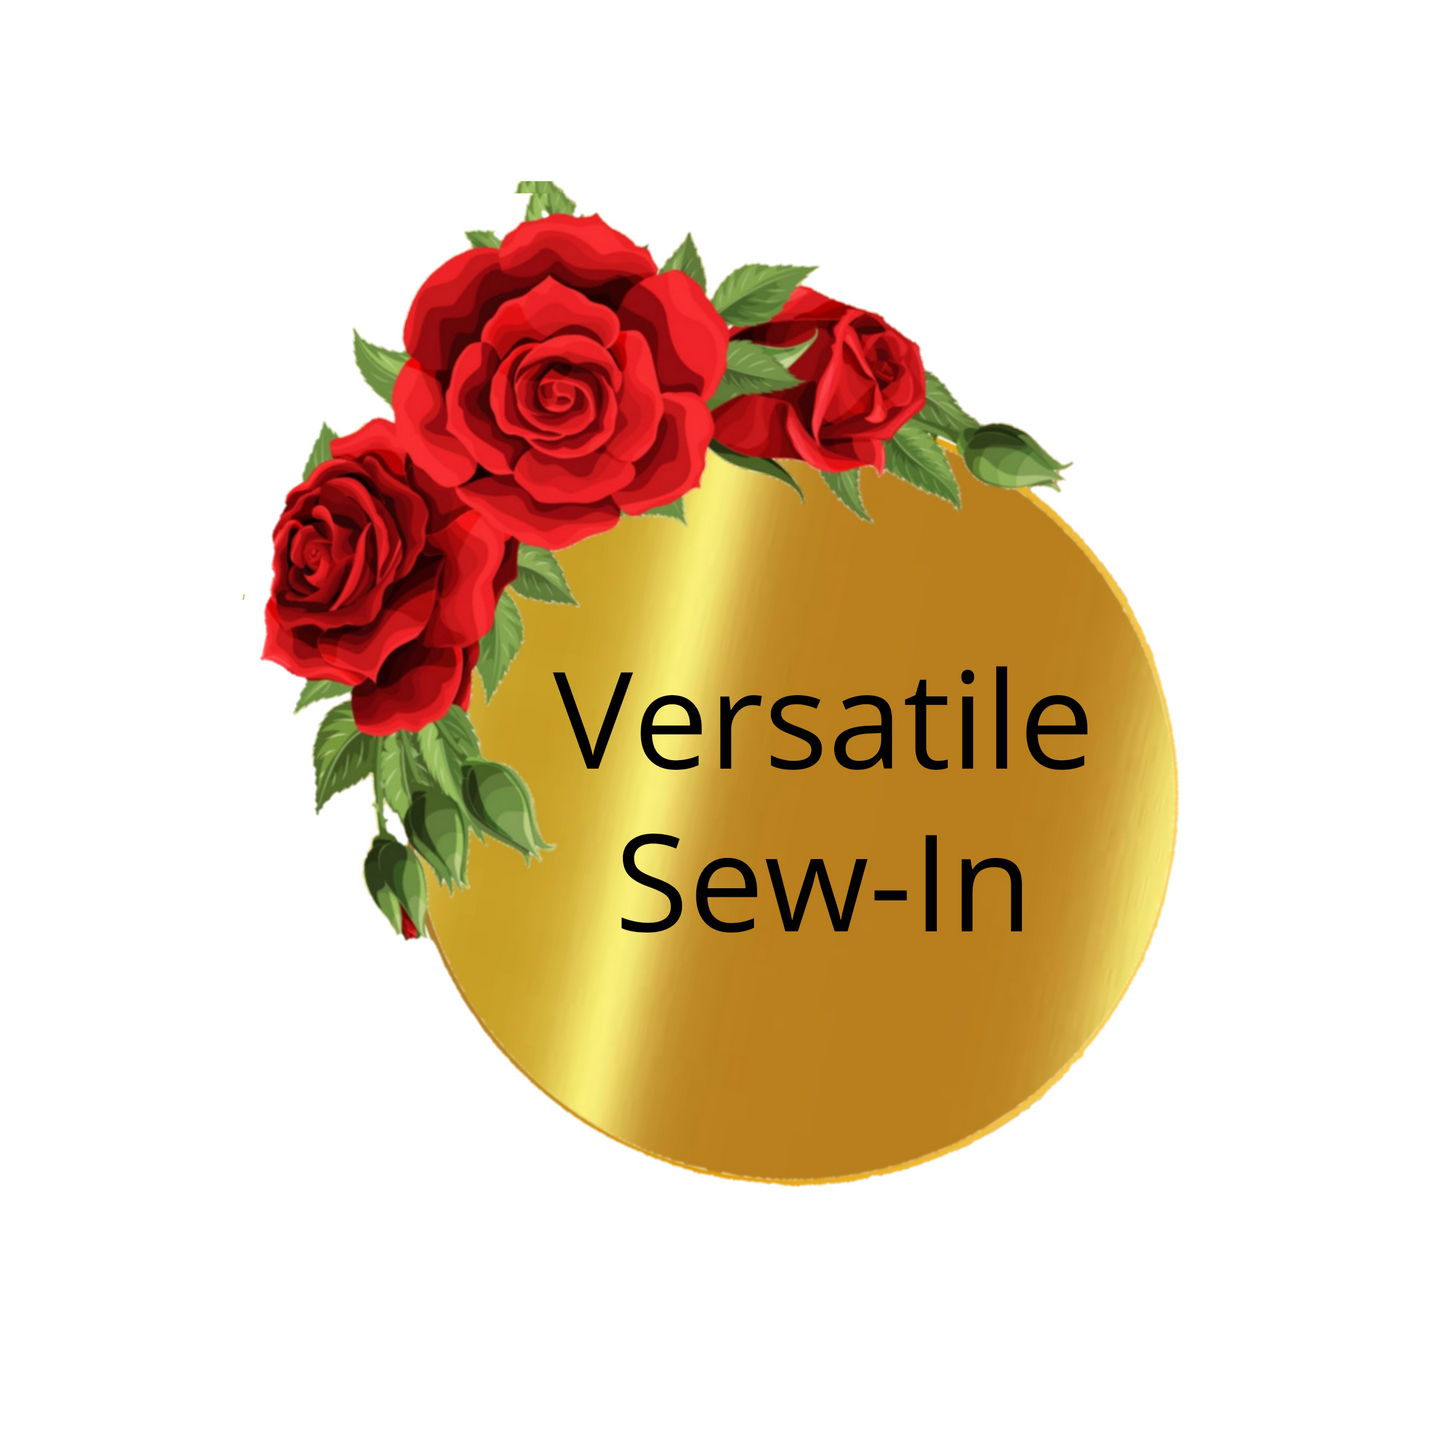 Versatile Sew-In